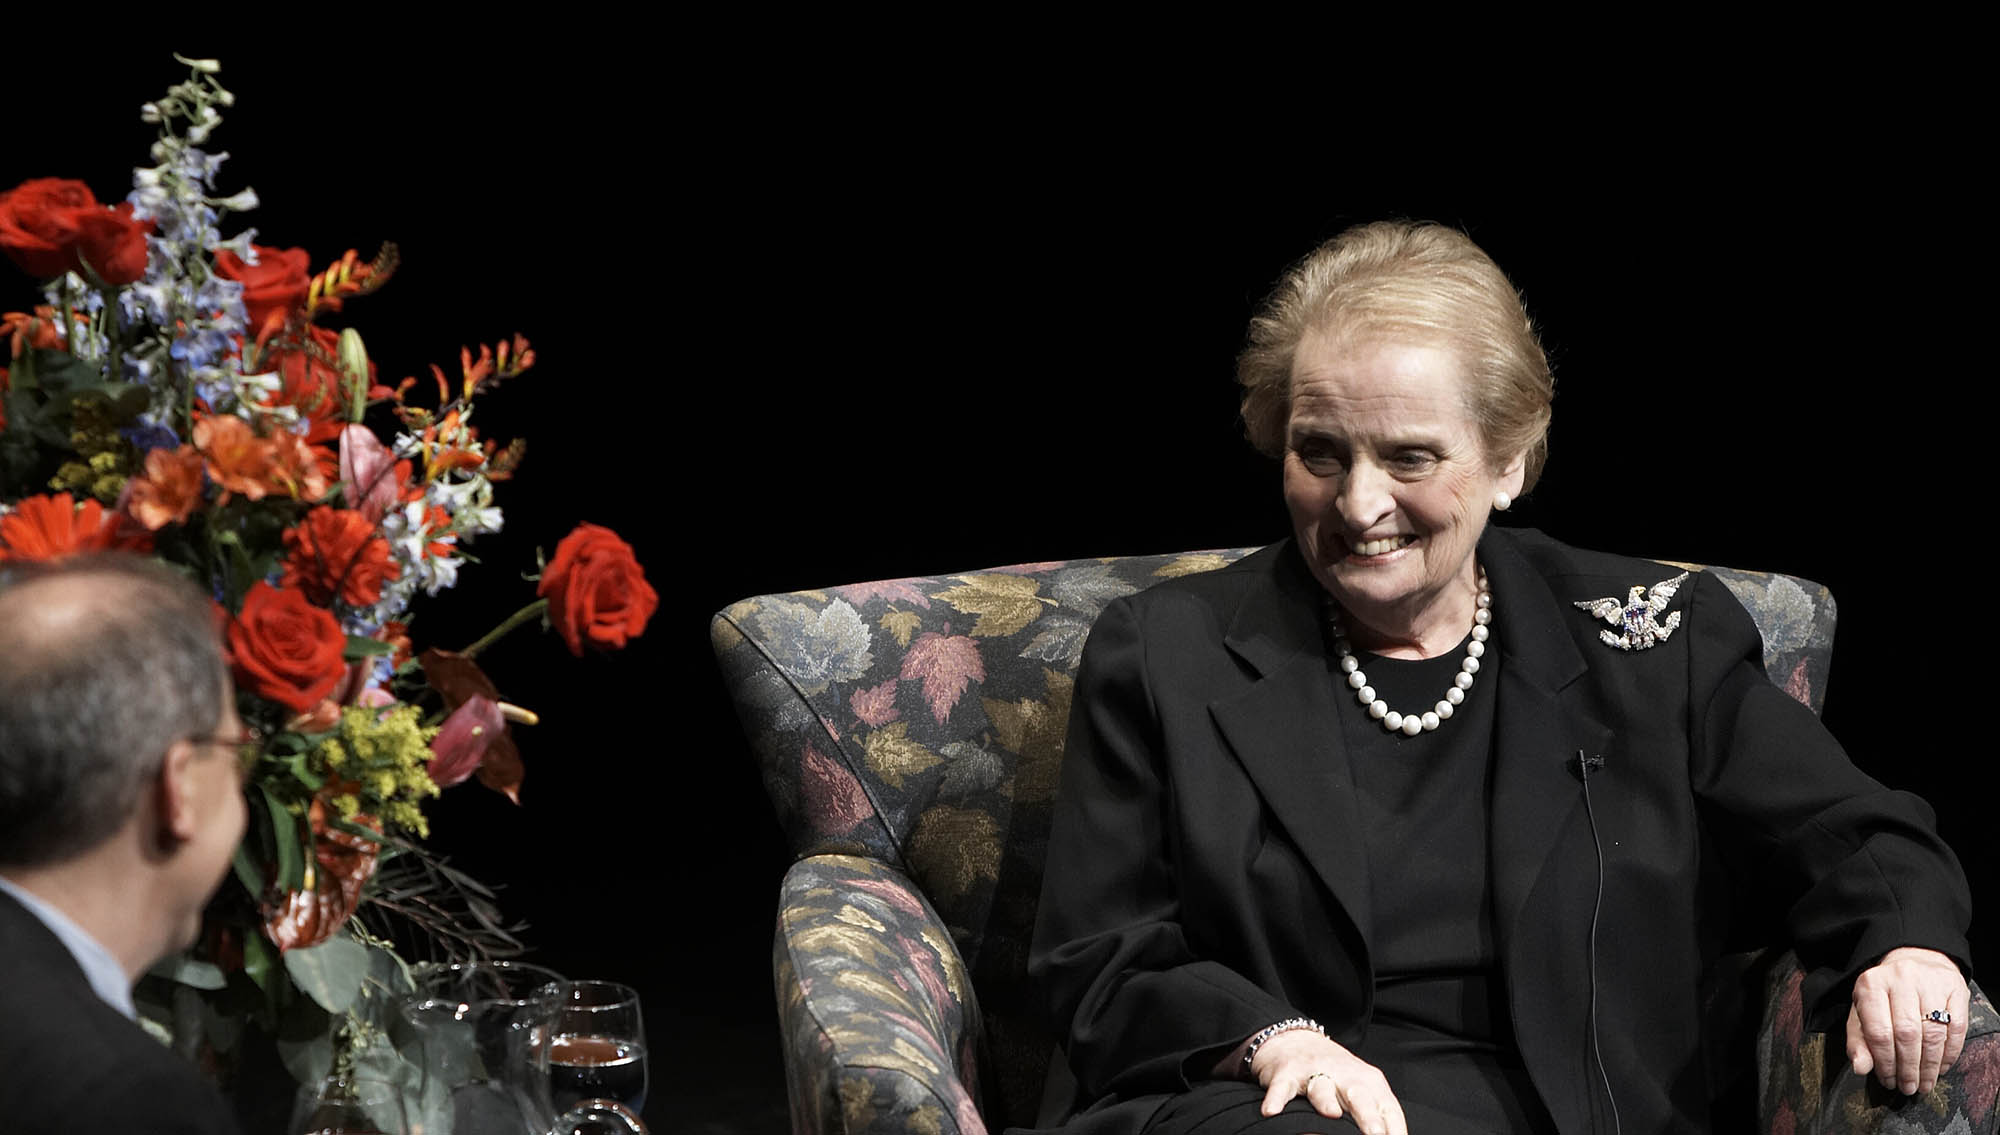 Madeleine Albright speaking at the Lied Center, 2006